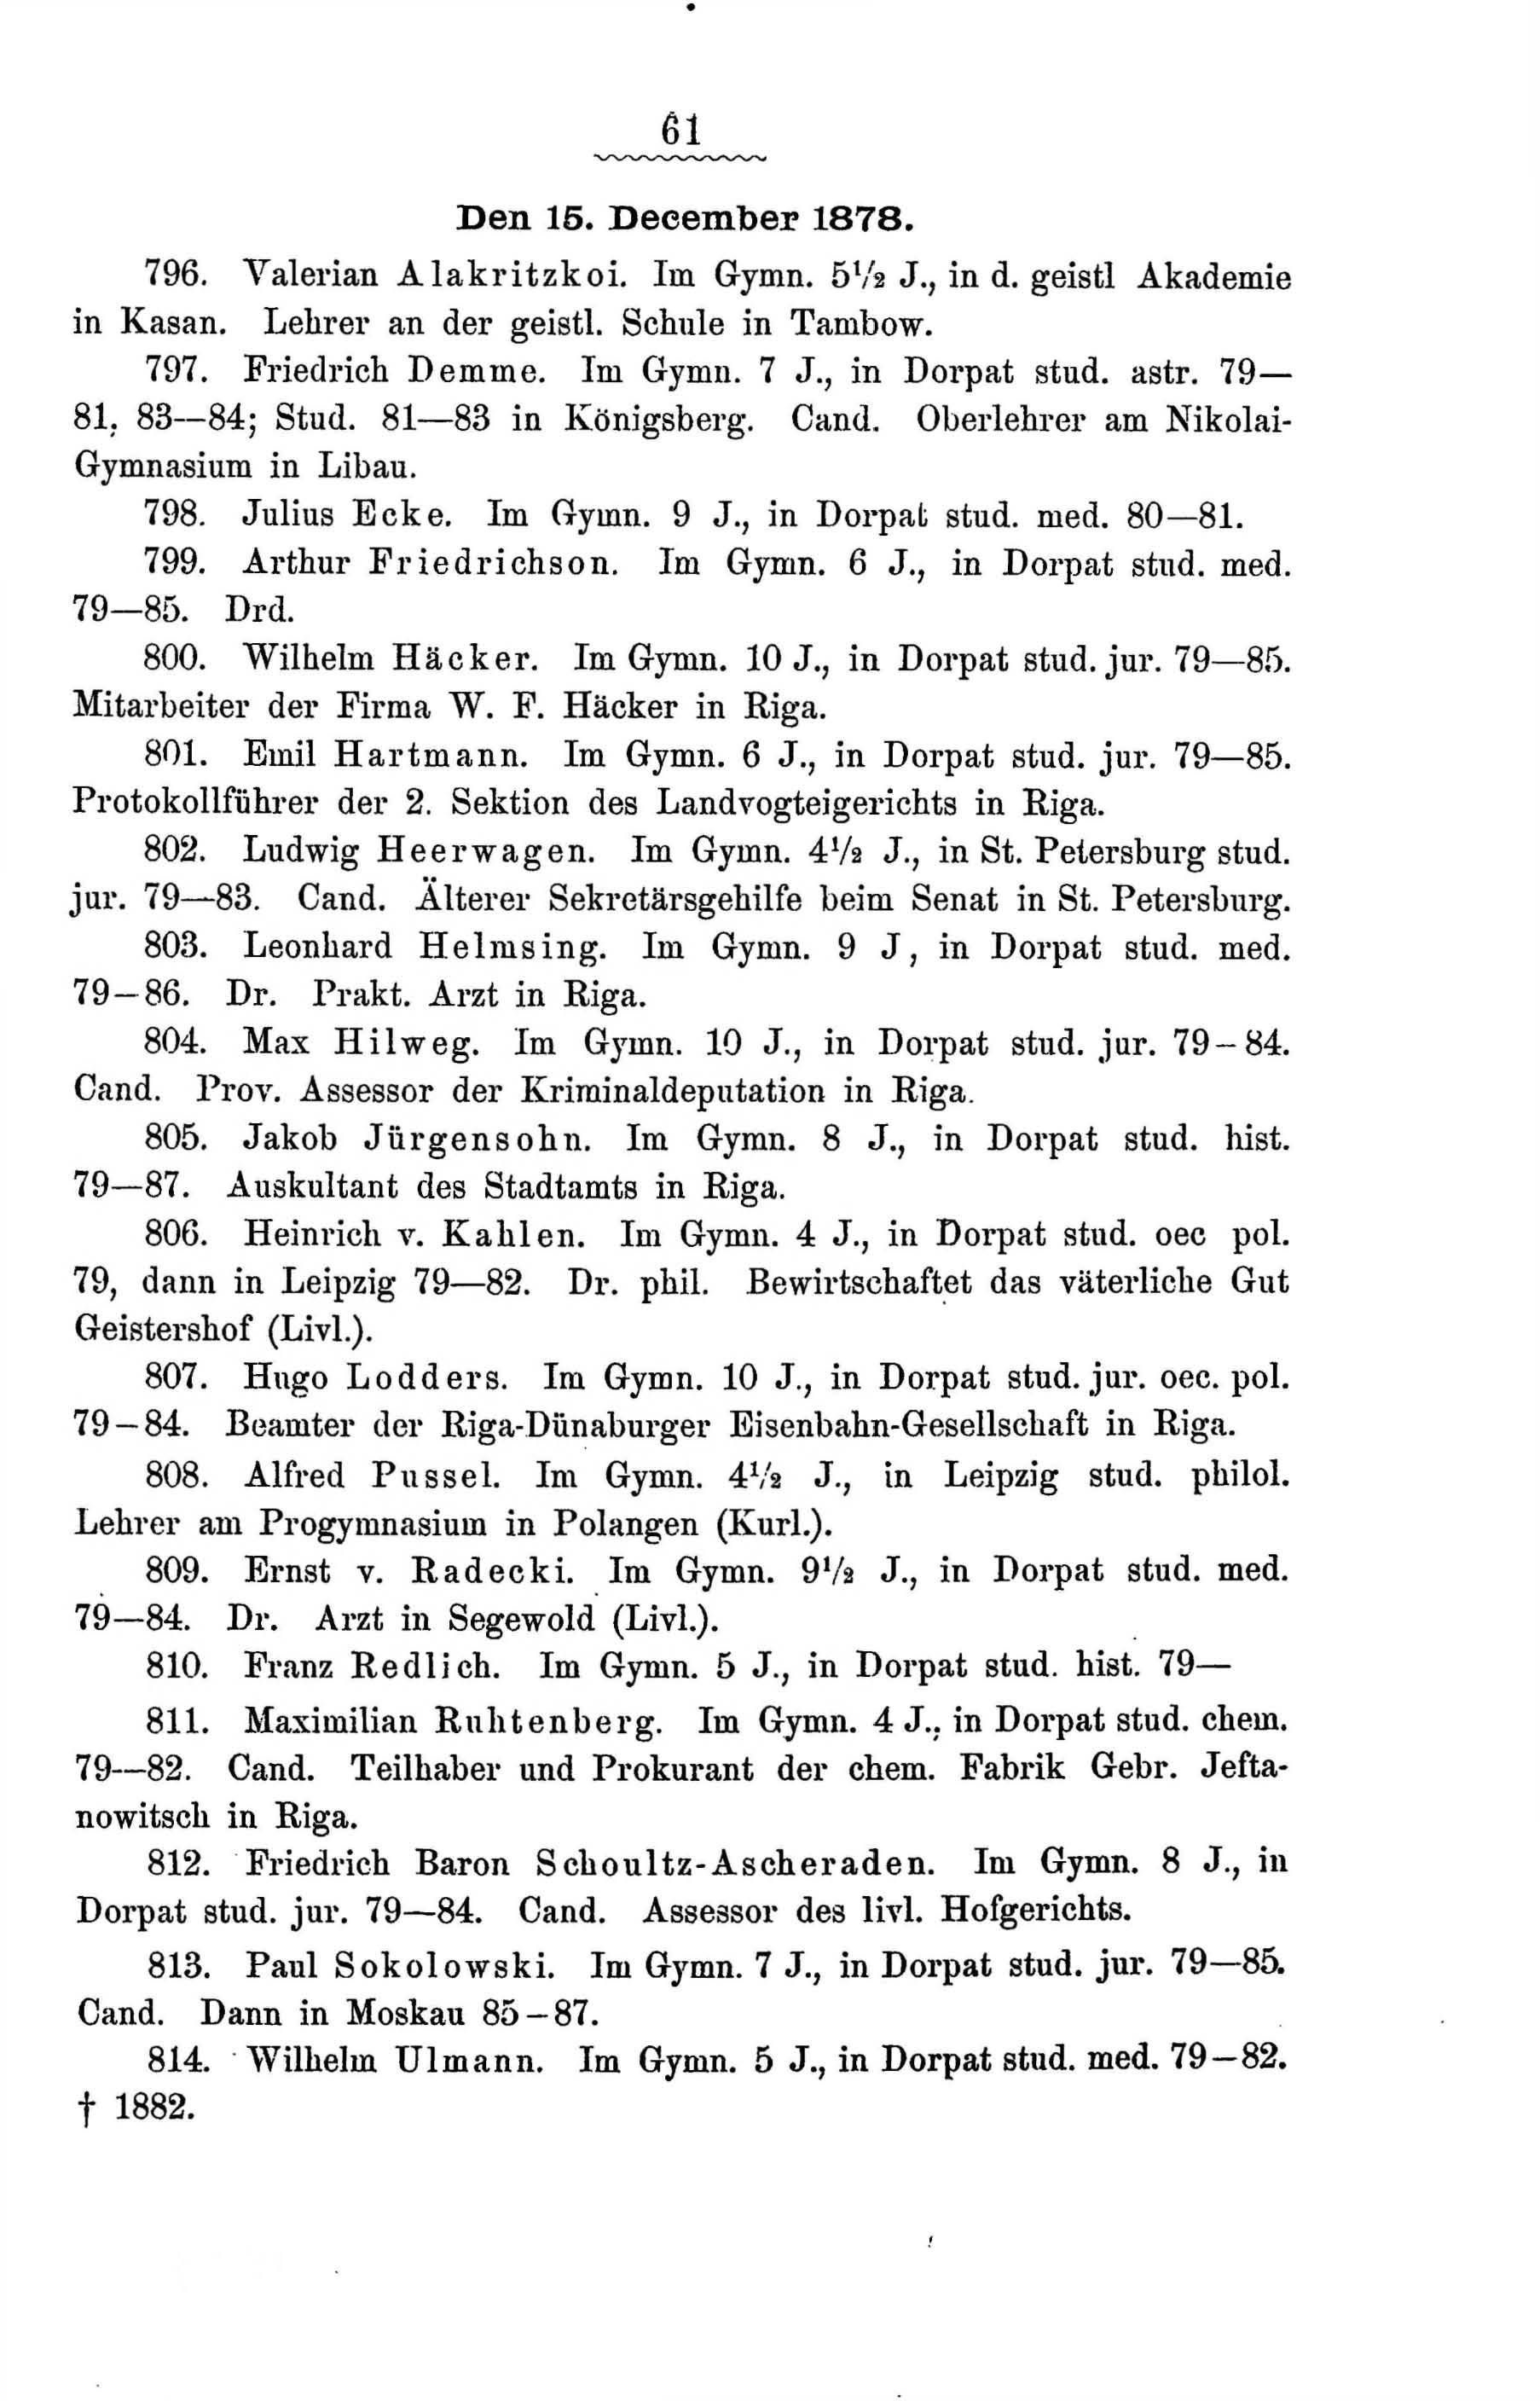 Zur Geschichte des Gouvernements-Gymnasiums in Riga (1888) | 114. Main body of text